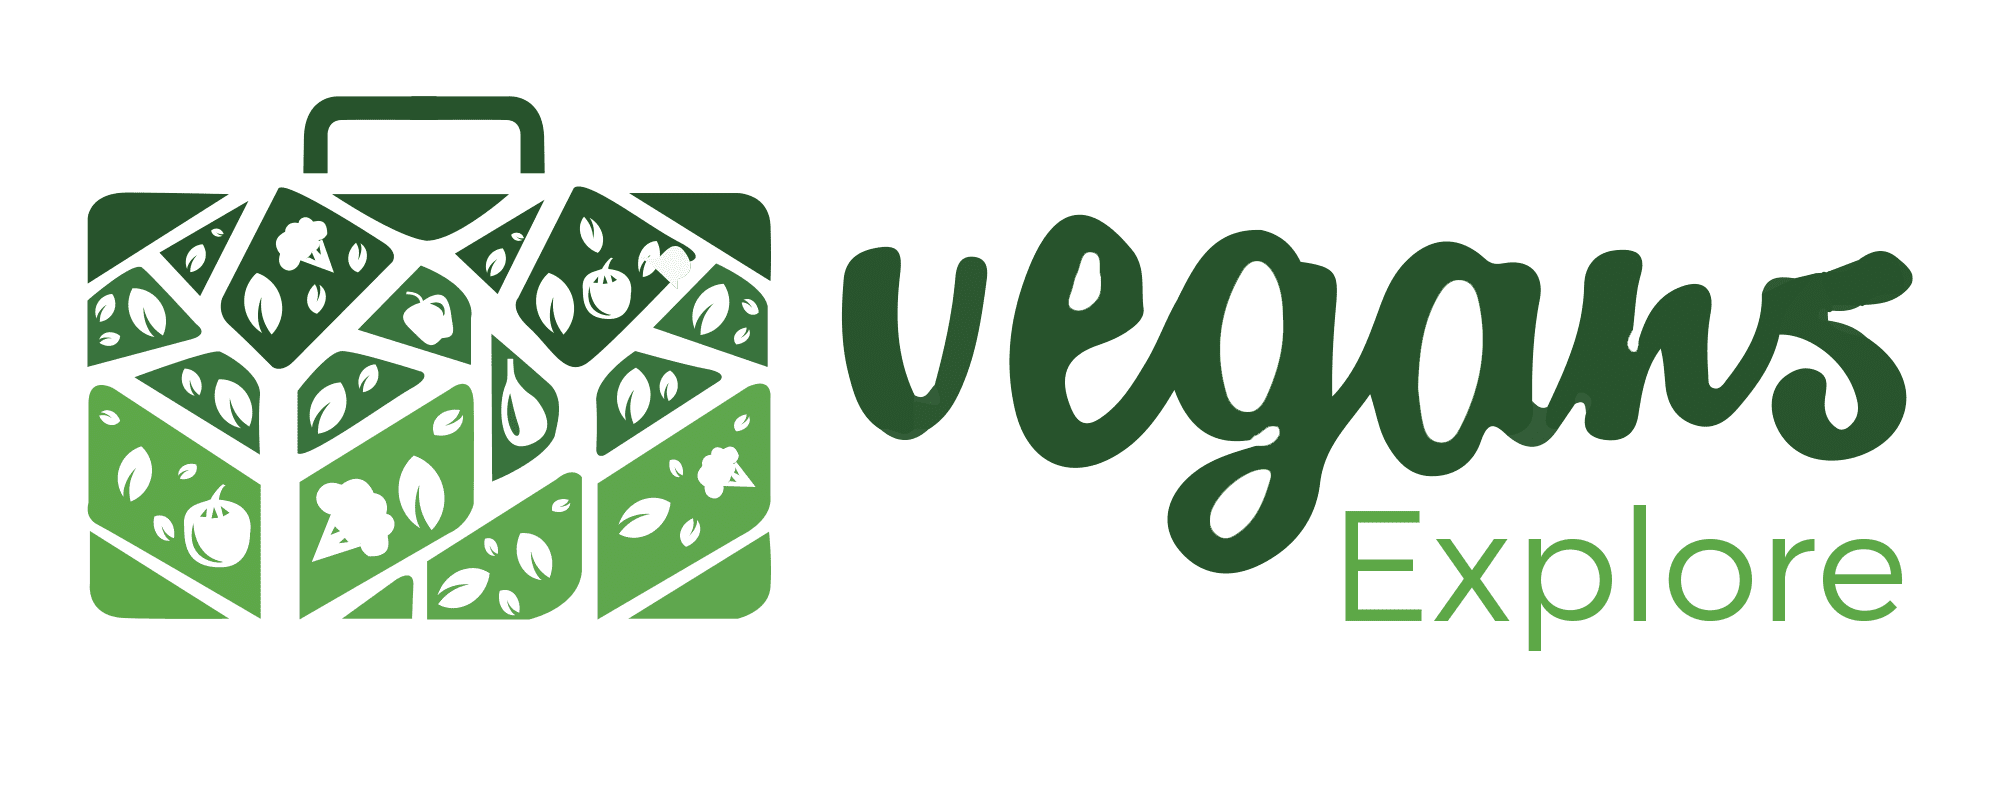 Vegans Explore